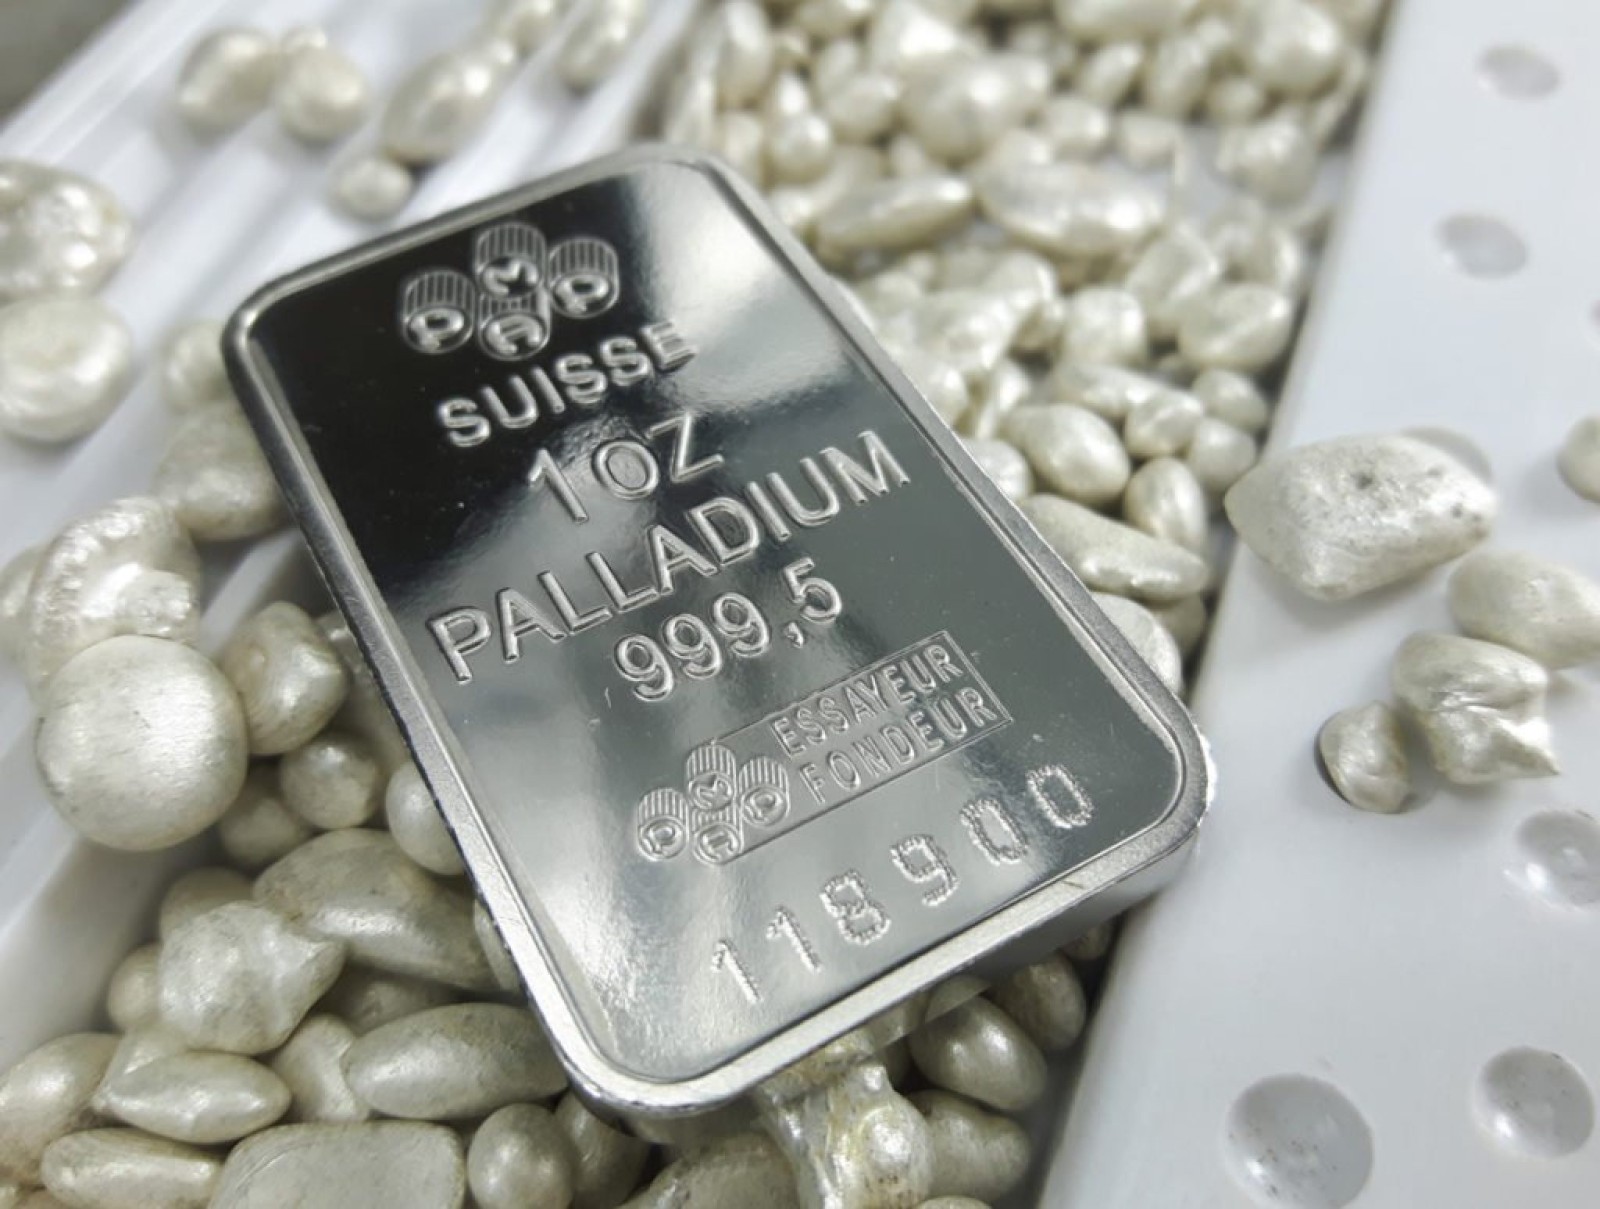 افزایش قیمت پالادیوم در تحریم های نوریلسک منجر به رالی طلا و پلاتین شد در حالی که ناتو به دنبال گسترش آن است.